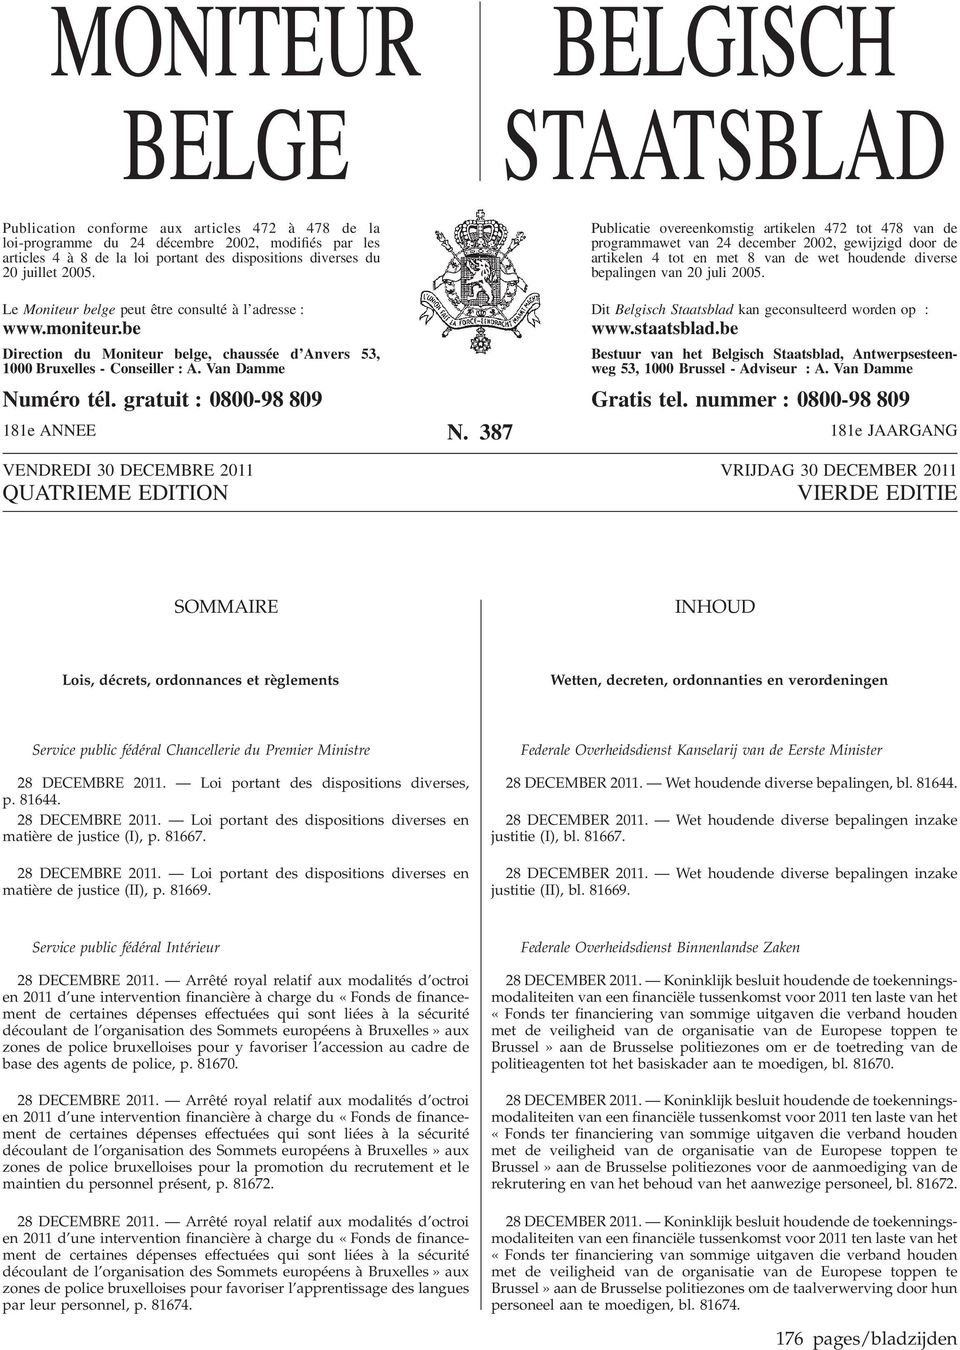 Publicatie overeenkomstig artikelen 472 tot 478 van de programmawet van 24 december 2002, gewijzigd door de artikelen 4 tot en met 8 van de wet houdende diverse bepalingen van 20 juli 2005.